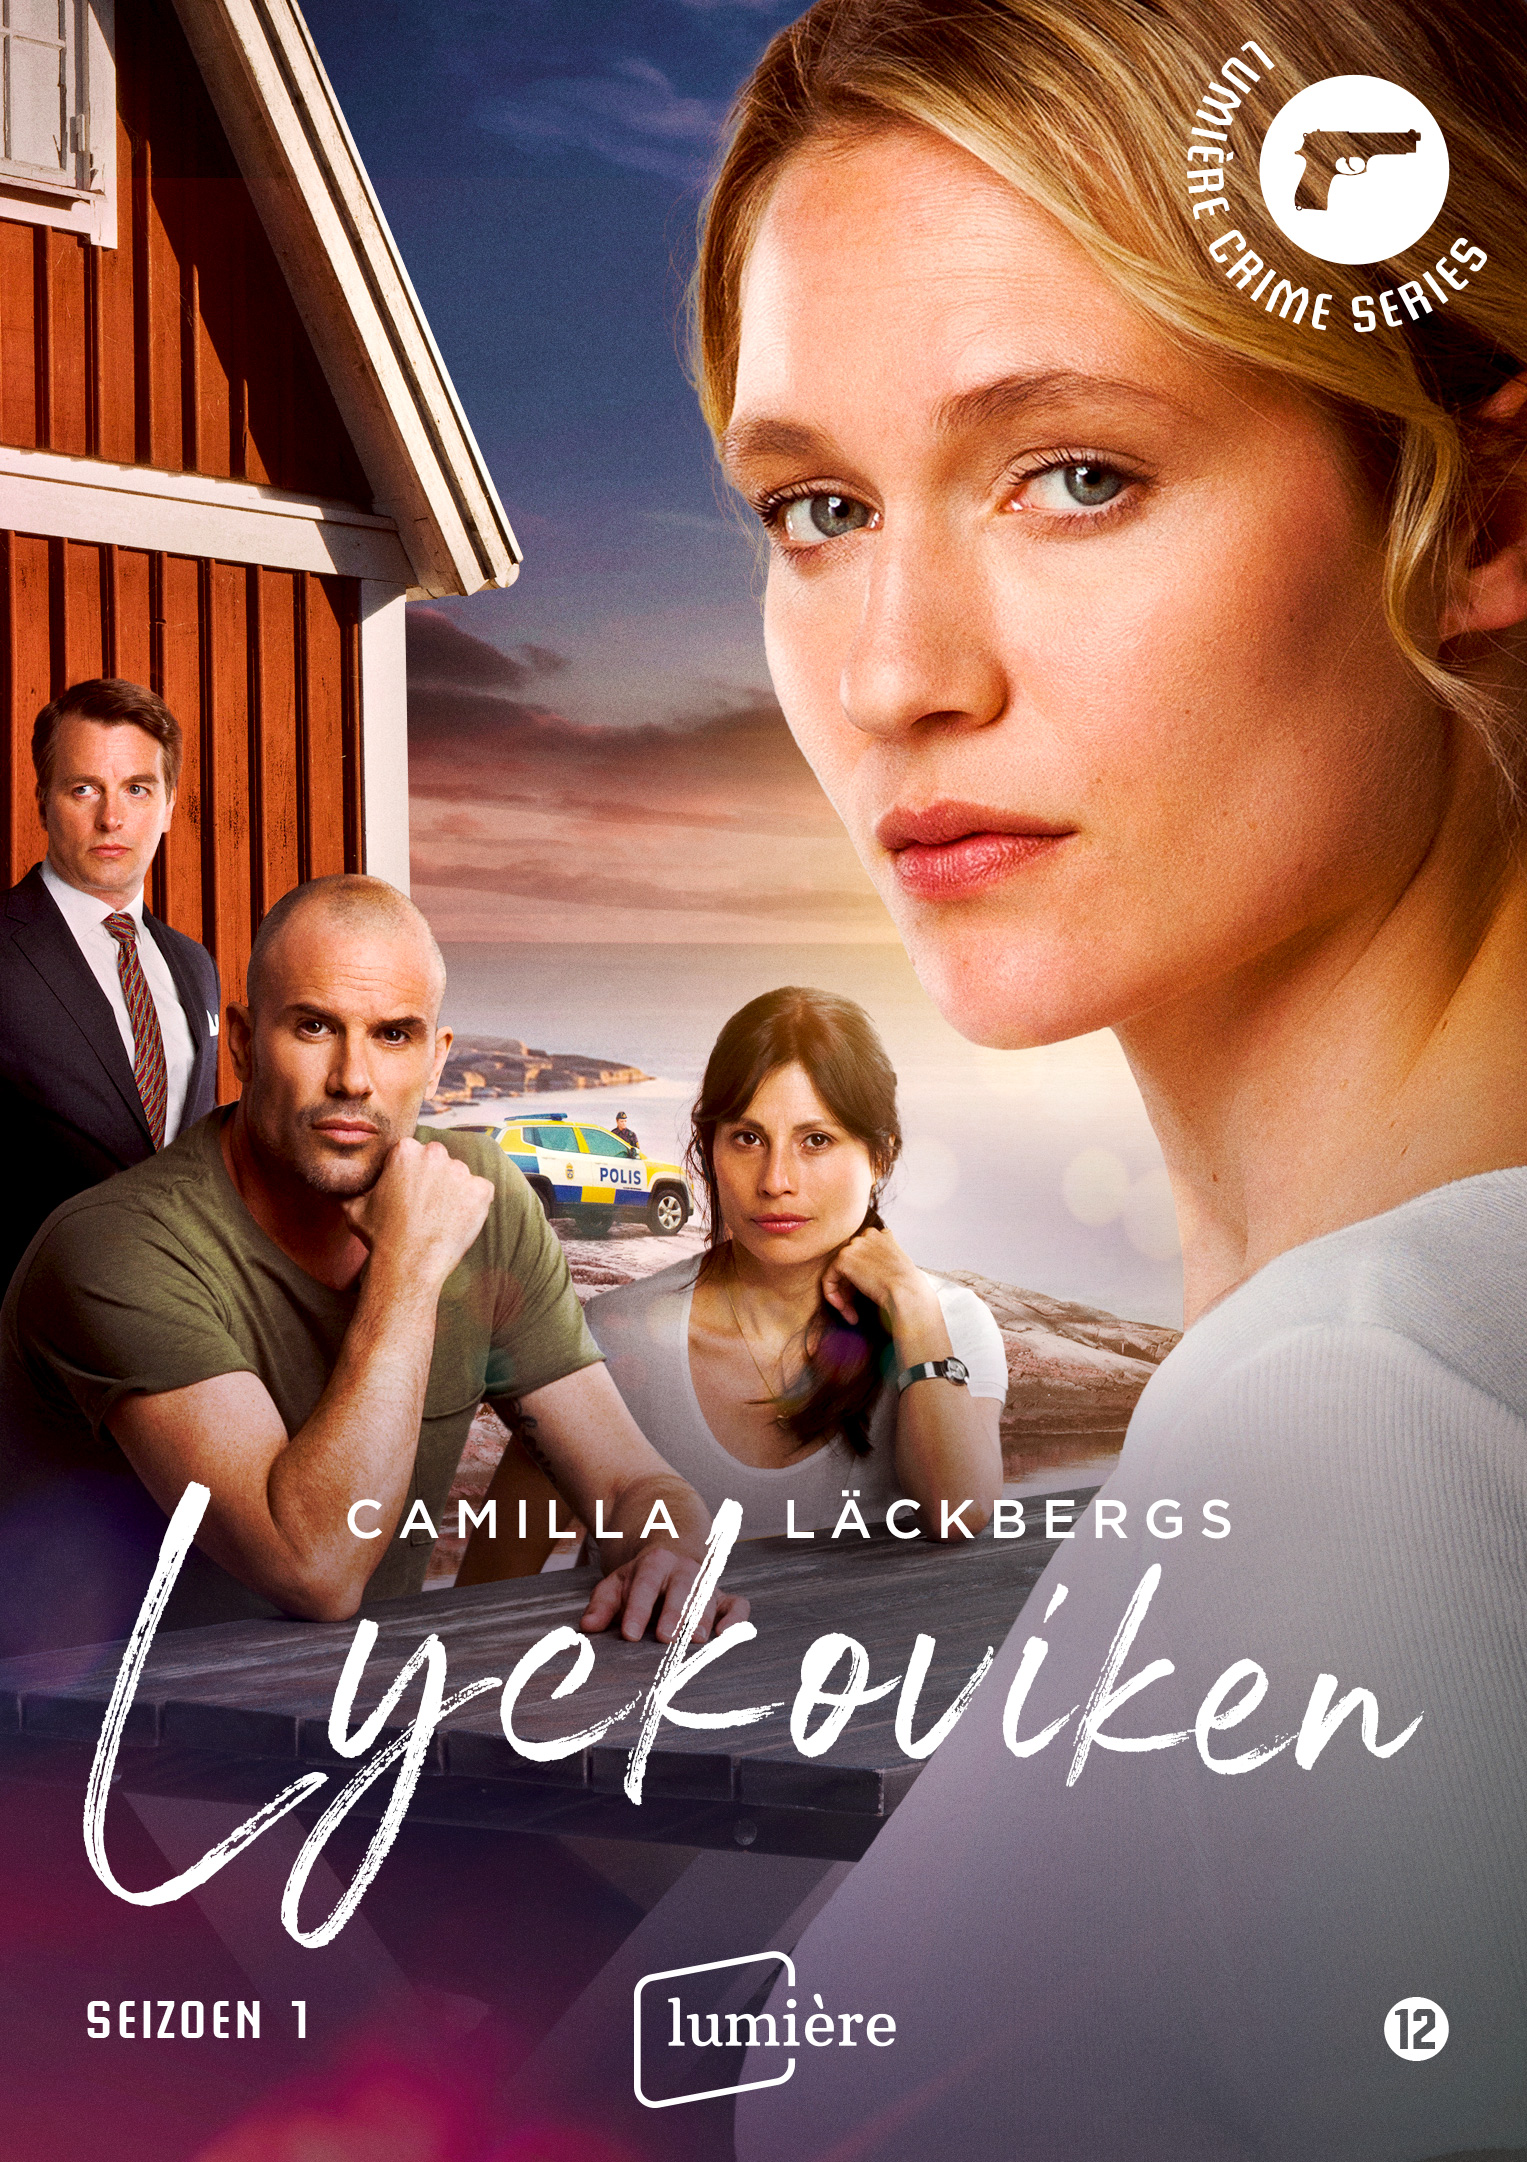 Camilla Läckbergs Lyckoviken (Hammarvik)